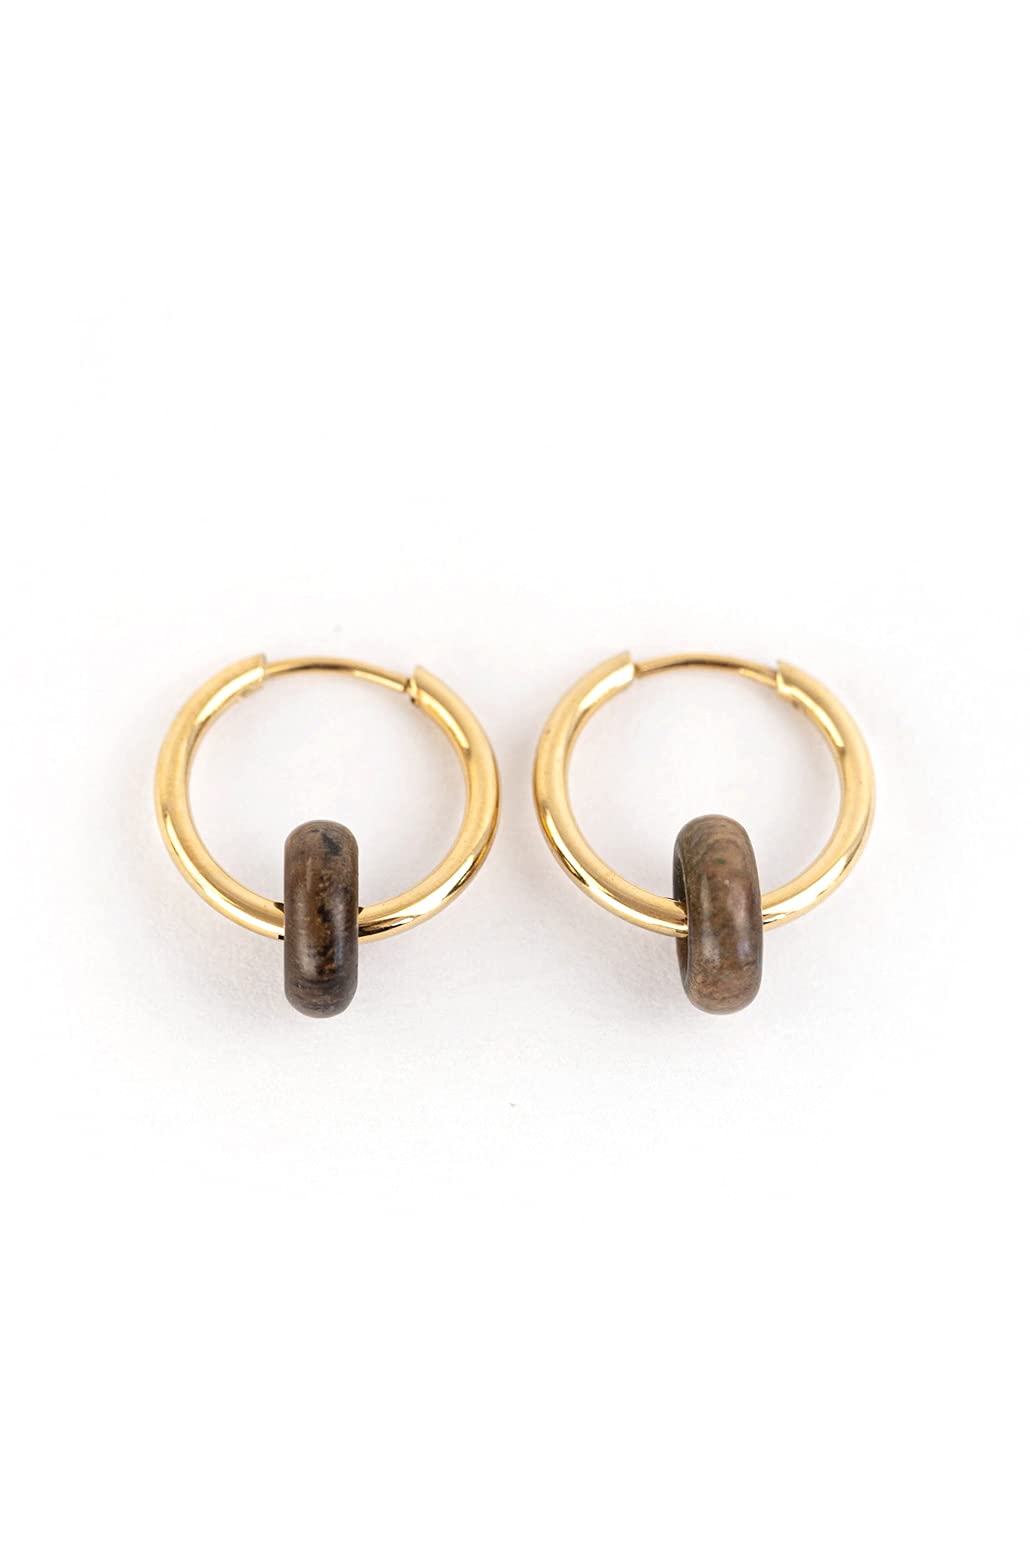 KERBHOLZ Holzschmuck – Geometrics Collection Donut Earring, Damen Ohrring geometrisch, kleine Creolen mit Element aus Naturholz (15mm x 8mm) (gold)